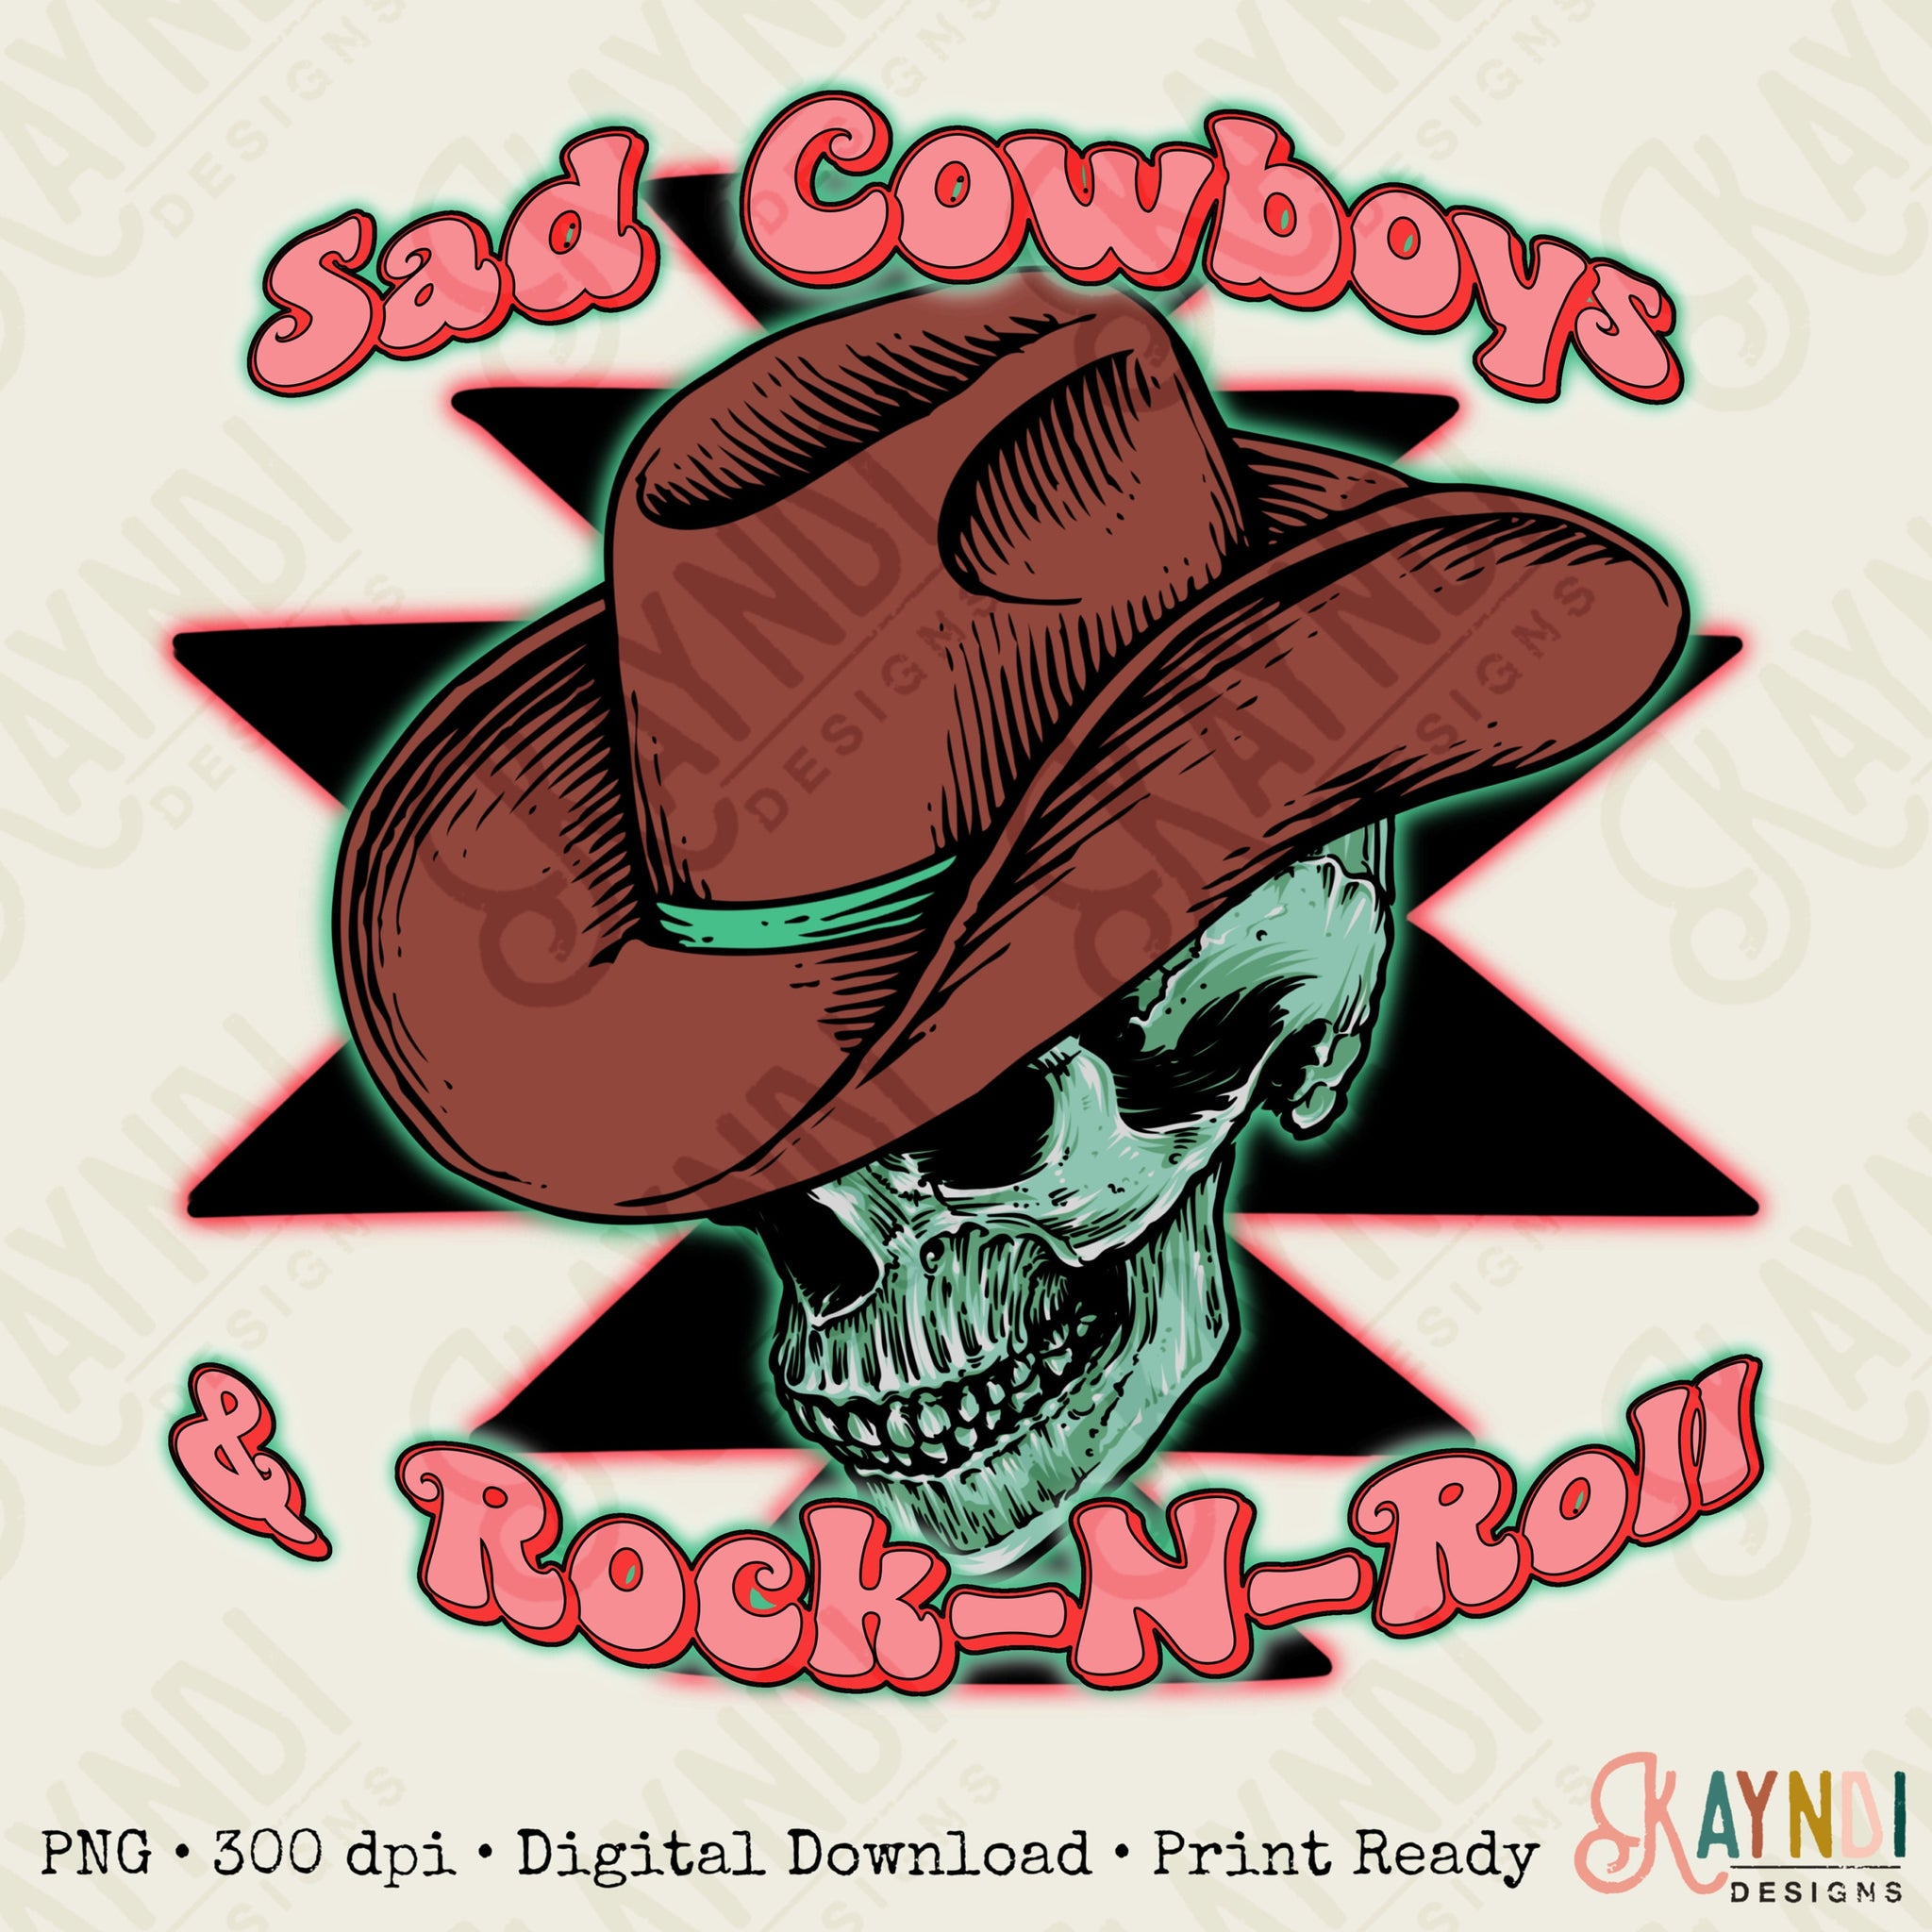 Sad Cowboy & Rock-N-Roll Sublimation Design PNG Digital Download Printable Rock and Roll Cowboy Hat Skeleton Skull Western Retro Groovy